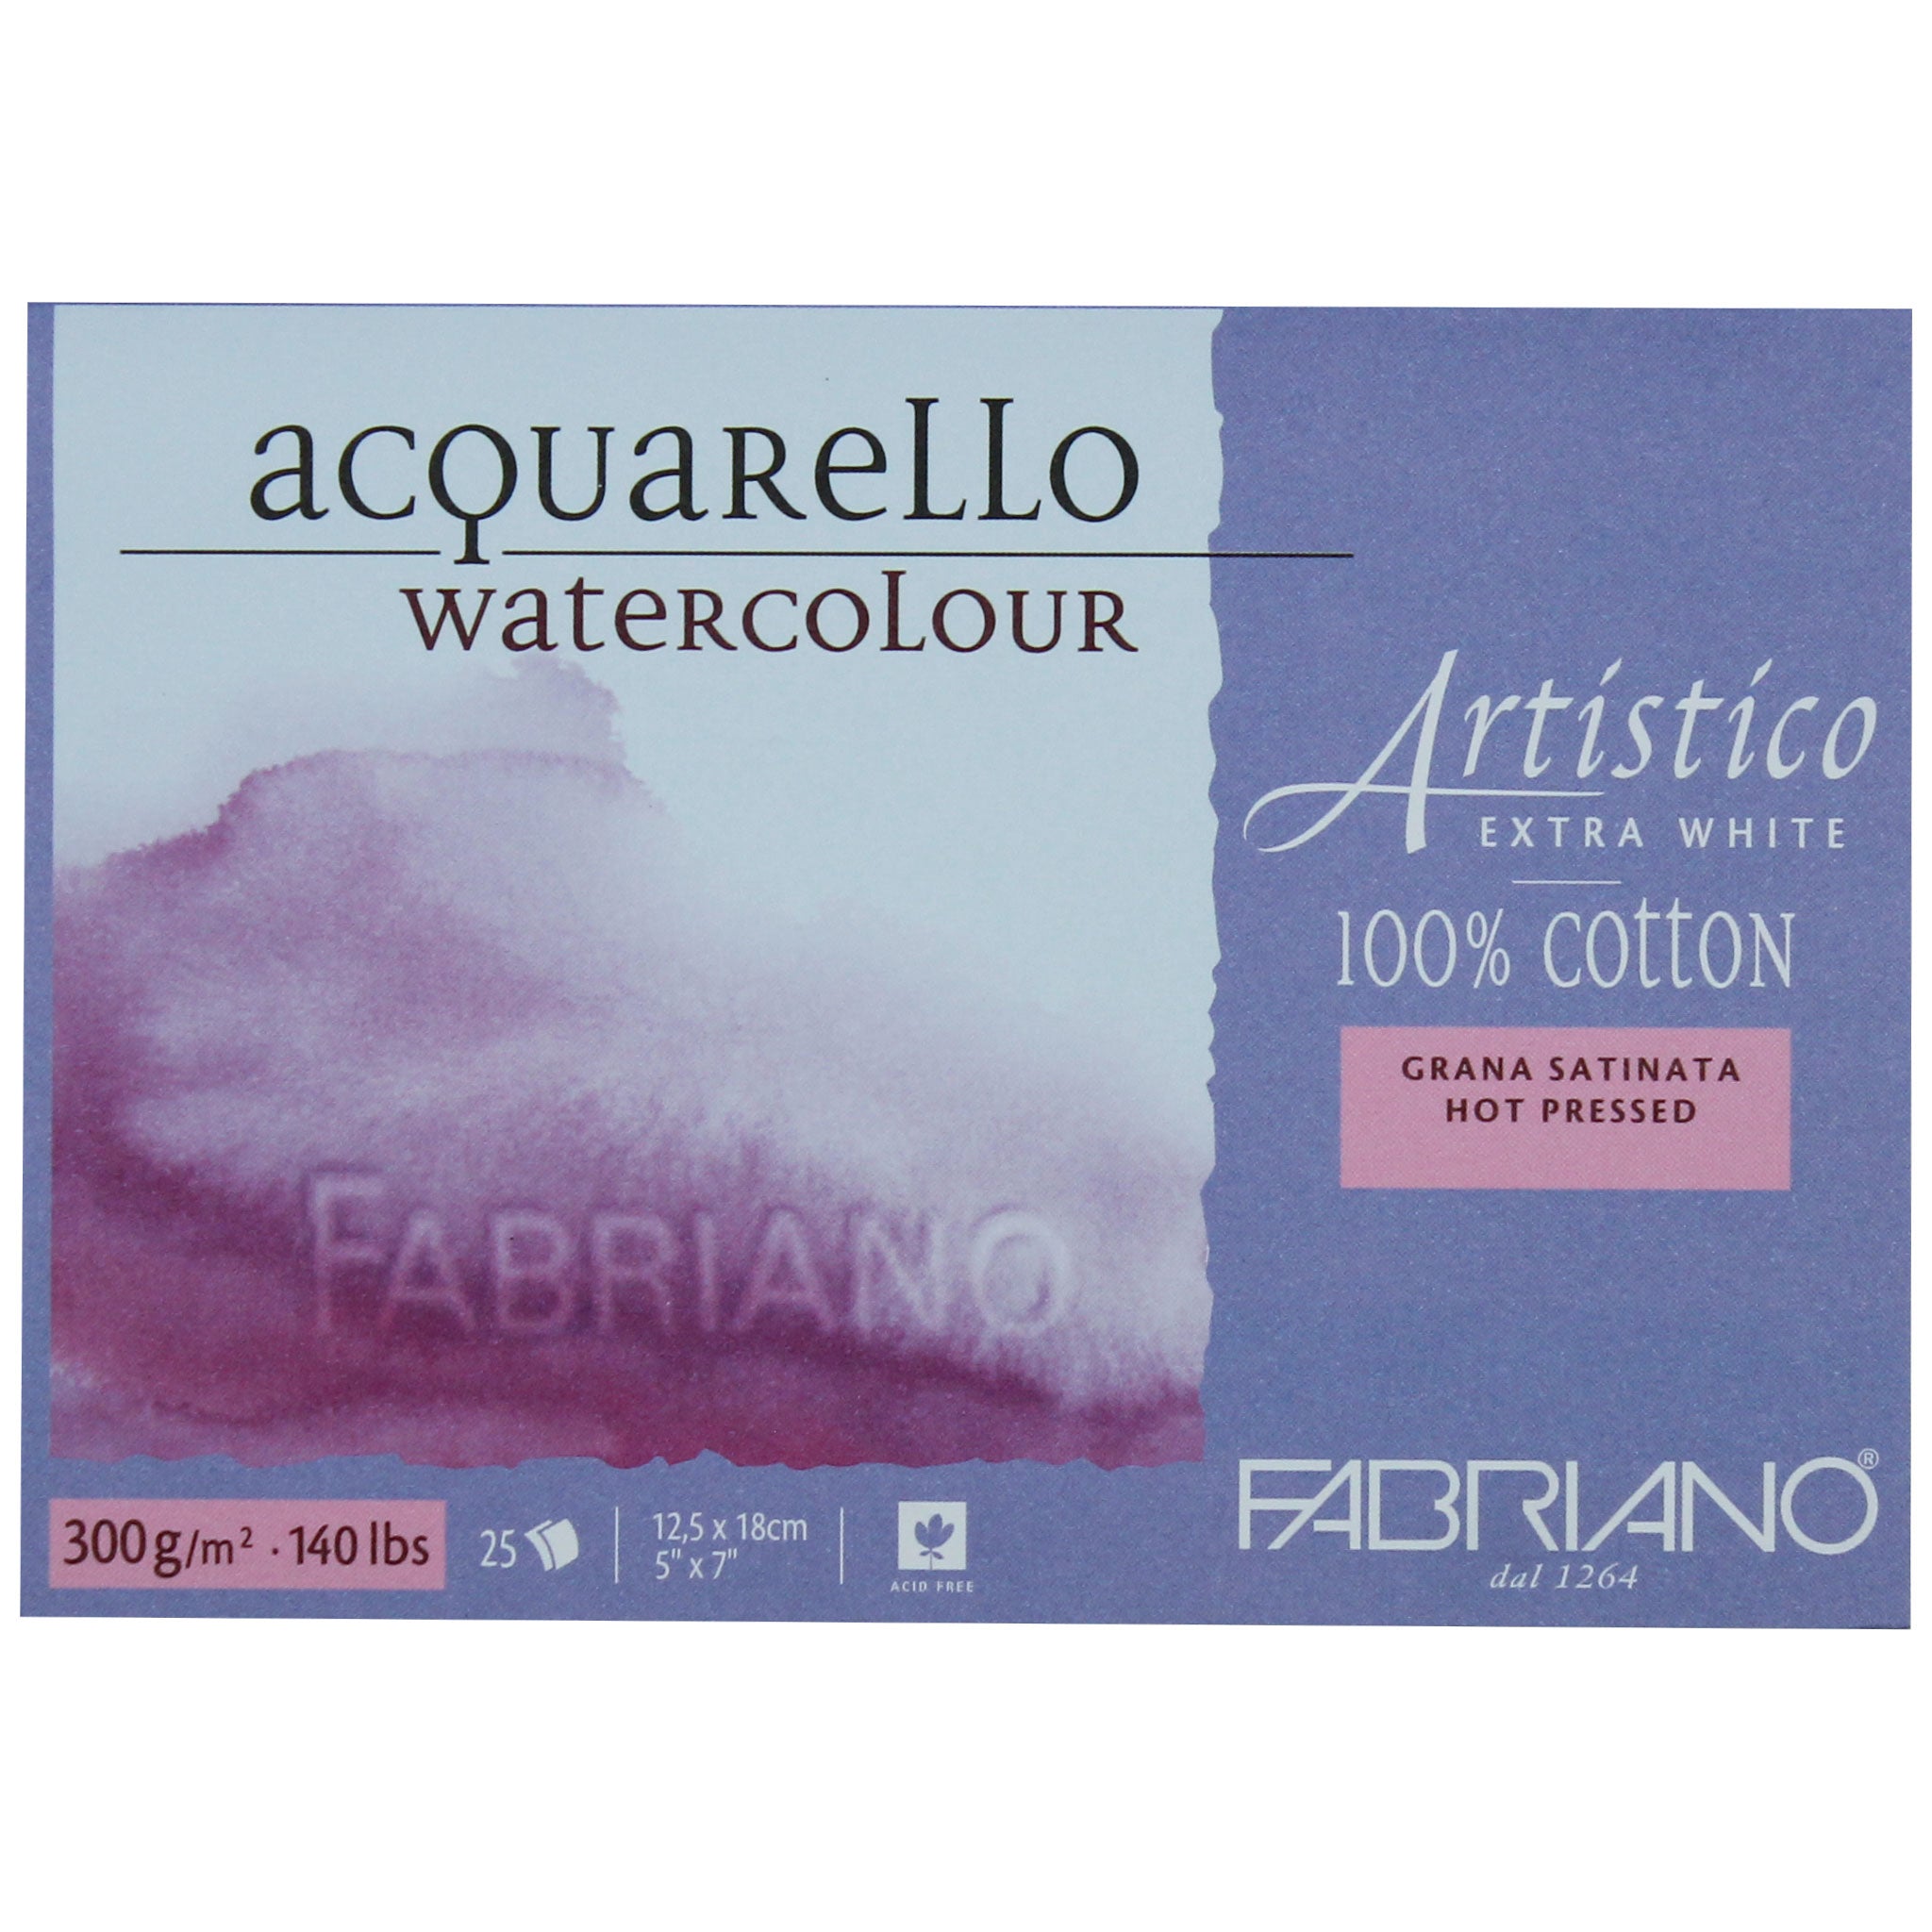 Fabriano Artistico Watercolor Paper